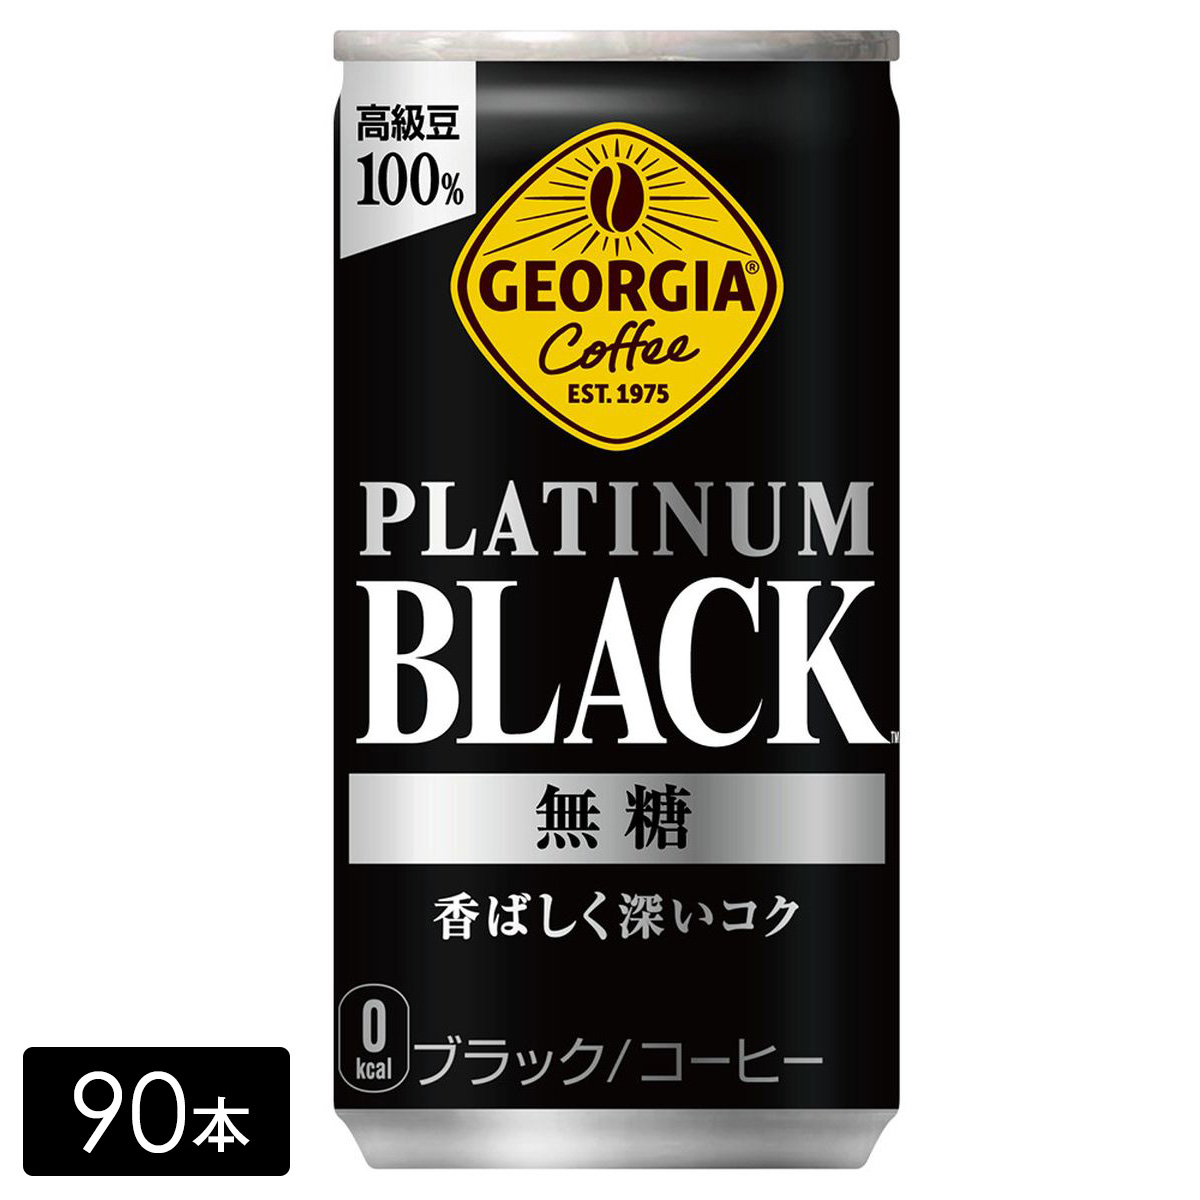 [送料無料]ジョージア プラチナムブラック 185g缶×90本(30本×3箱) 缶コーヒー PLATINUM BLACK ケース売り まとめ買い